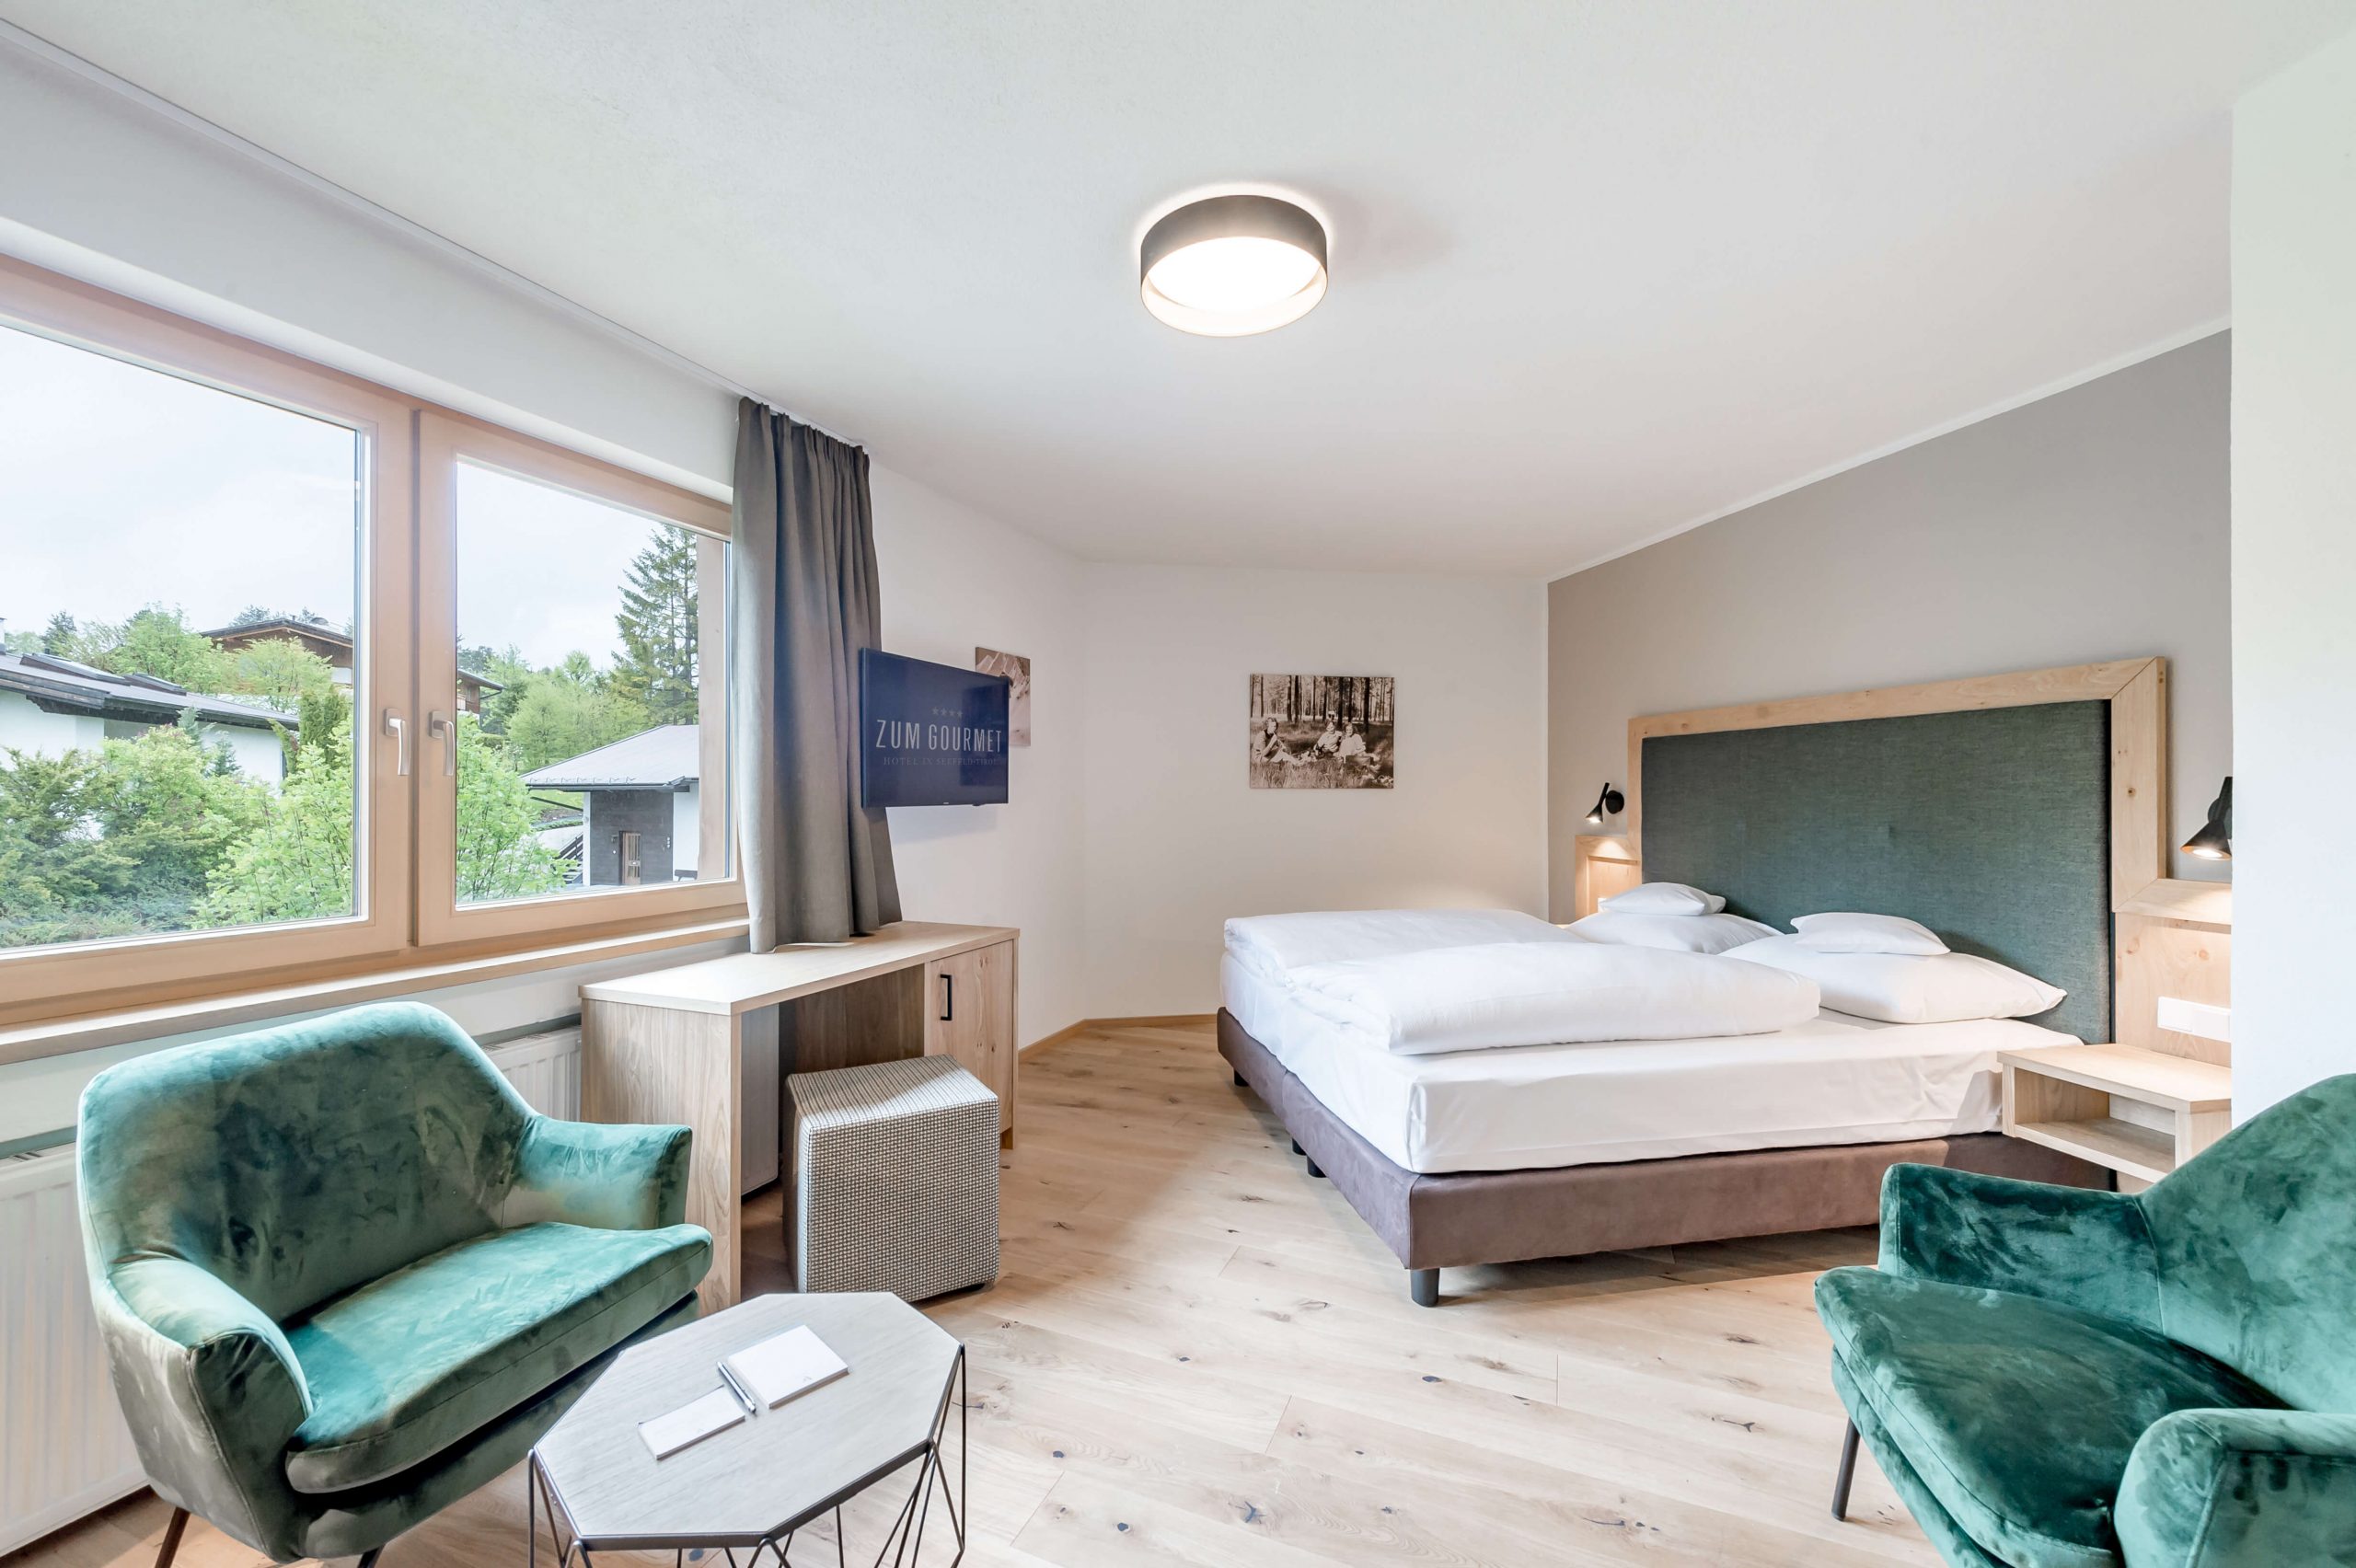 Zimmer Hotel Zum Gourmet © alexander maria lohmann